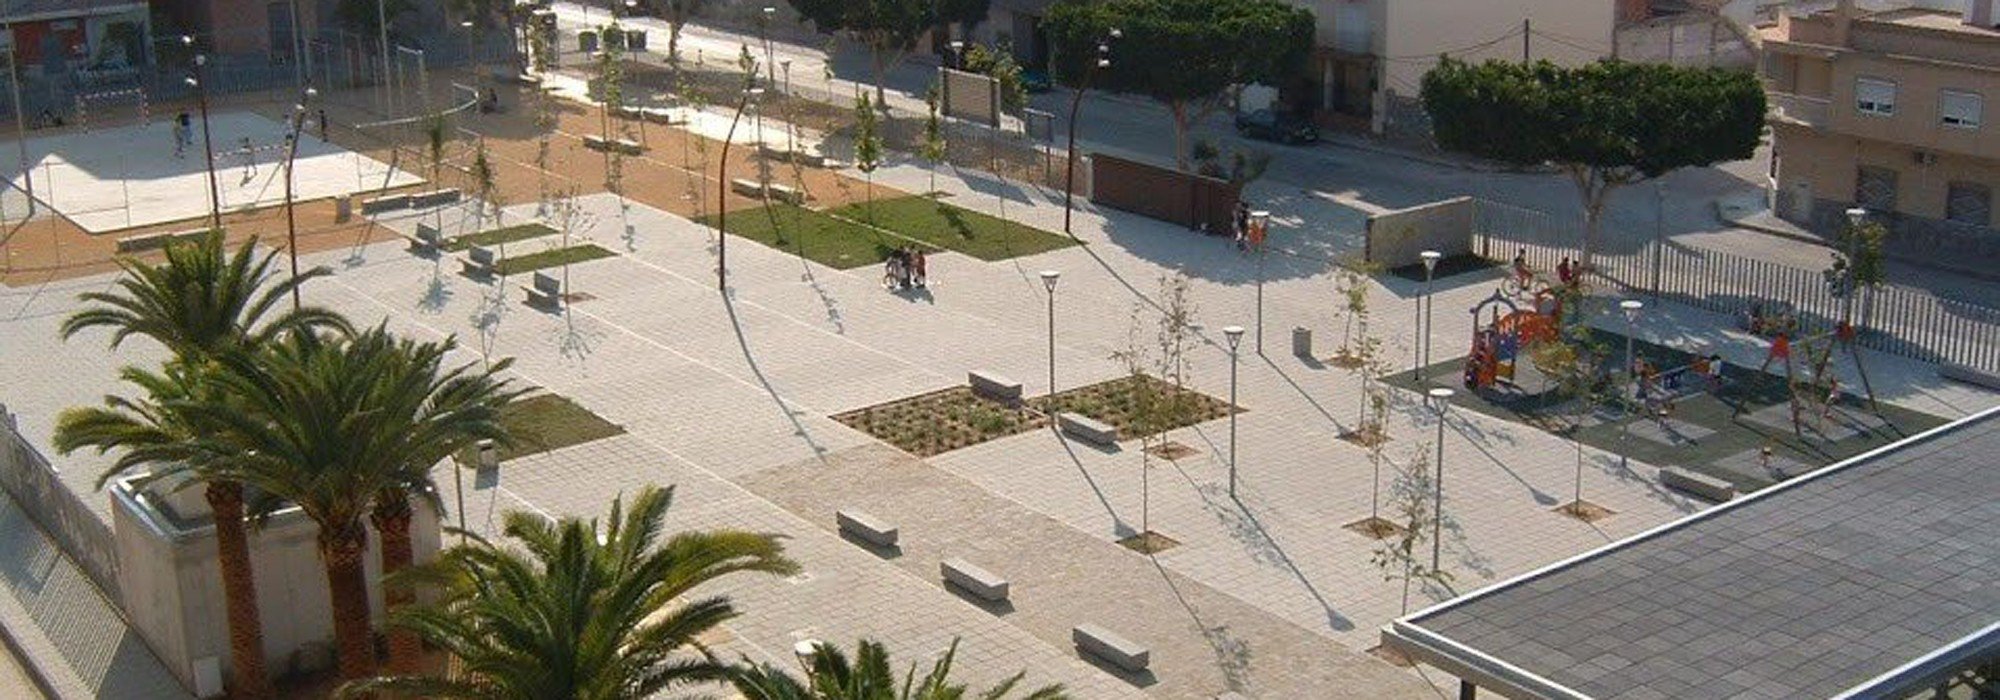 Proyecto de Urb. de 2 calles :: NUÑO ARQUITECTURA  Arquitectura sostenible diseñada para tí